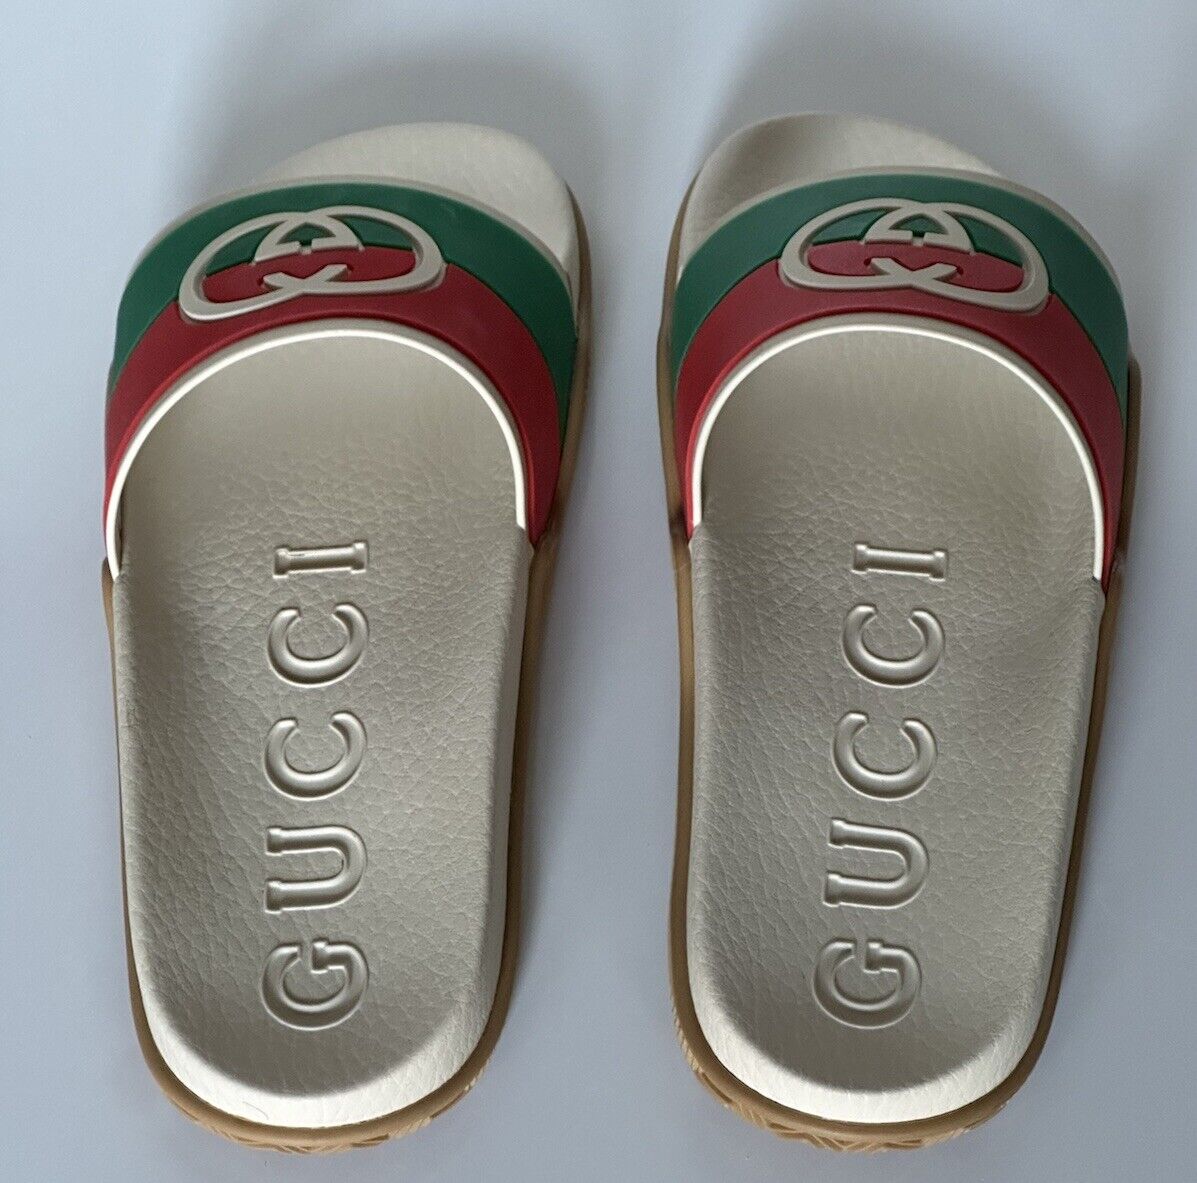 NIB Gucci Men's Rubber GG Interlock White/Red/Green Sandals 6 US 5 Gucci 655265